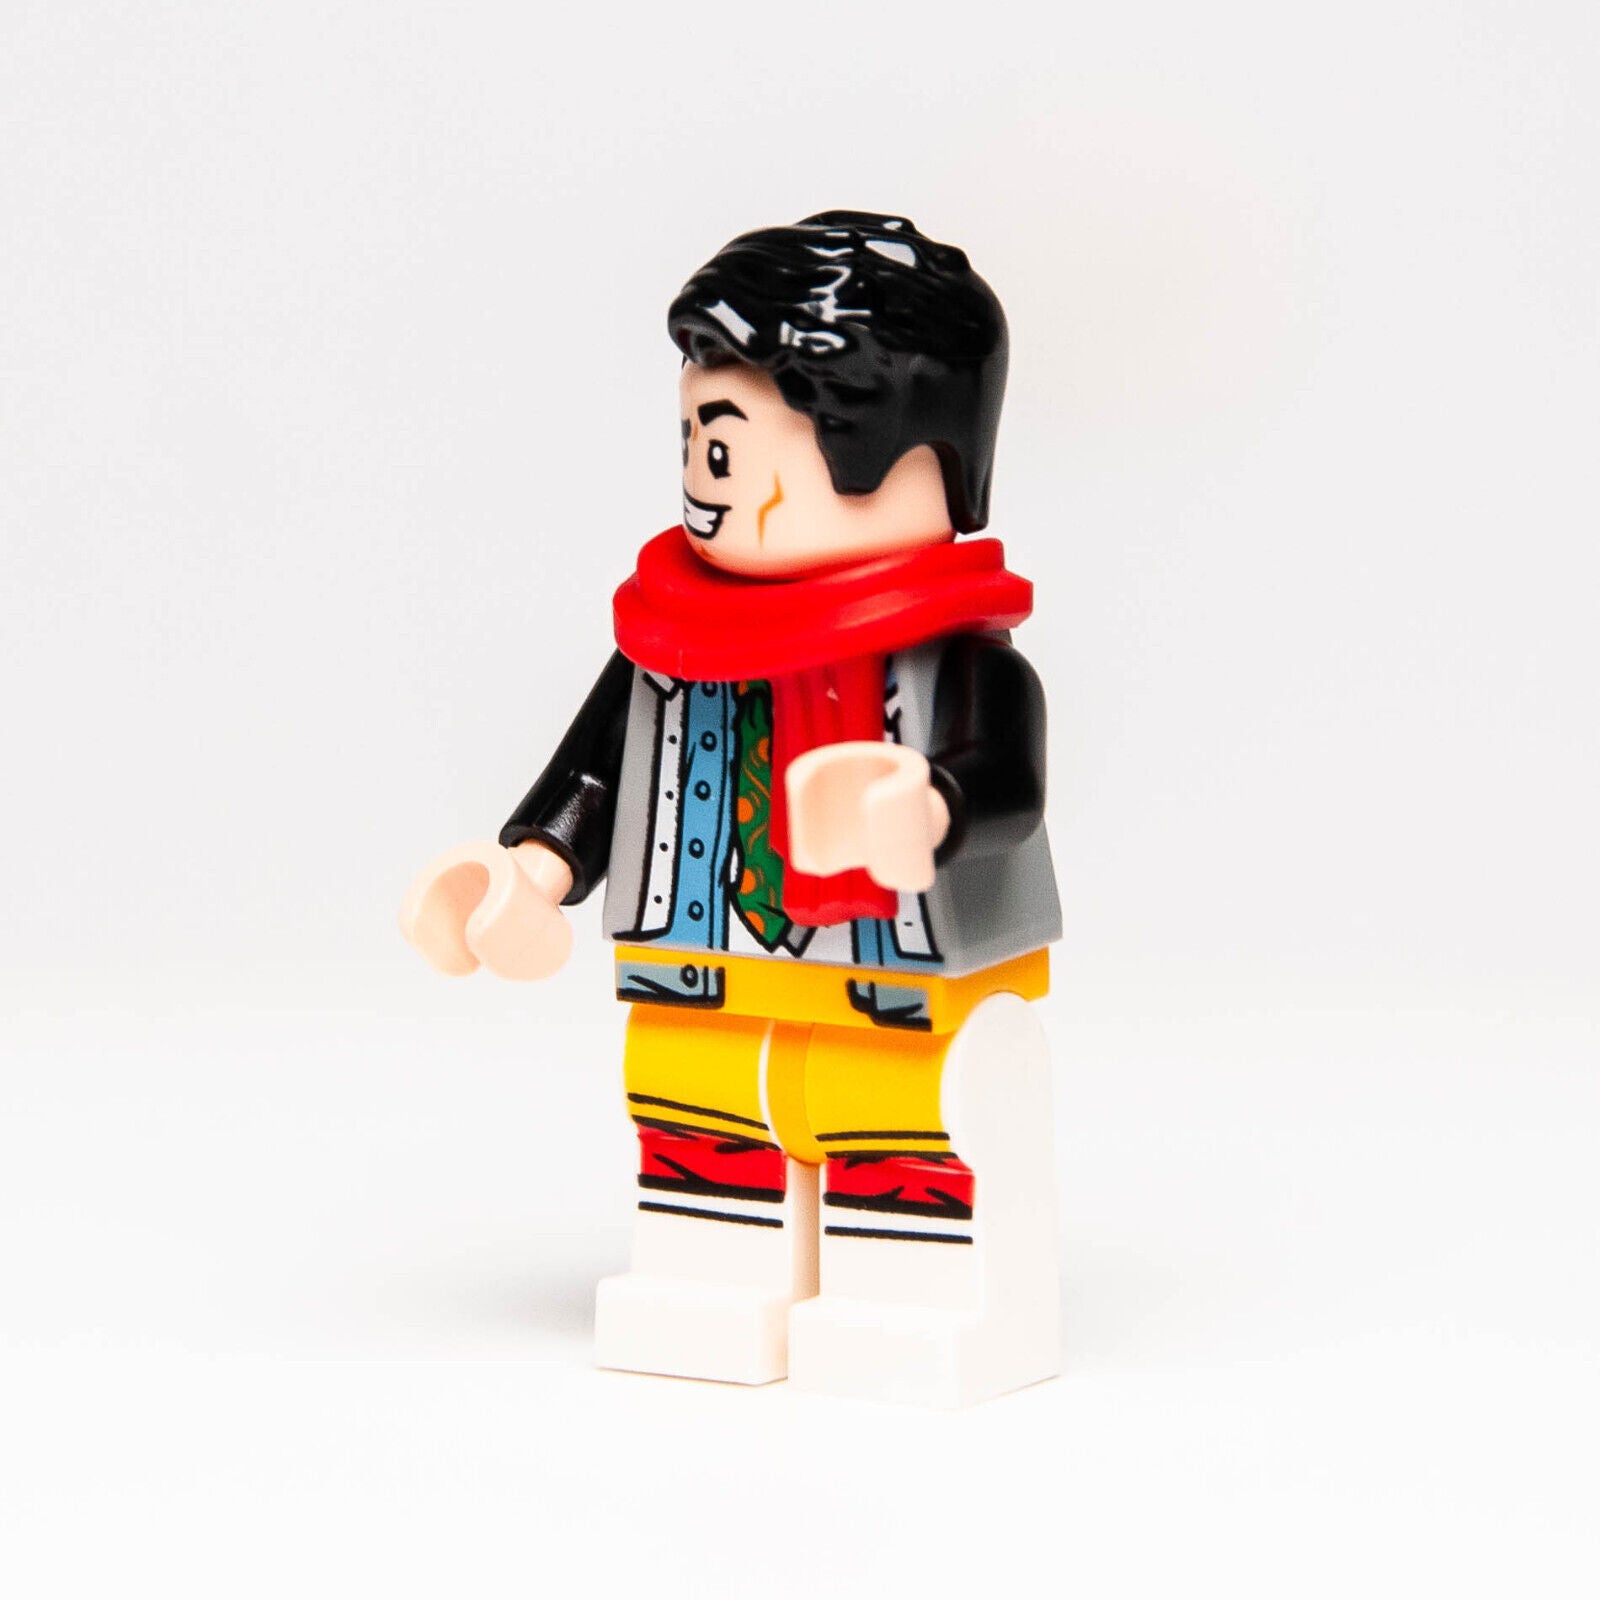 NEW Lego TV Series Friends Minifigure - Joe Tribbiani Red Scarf 10292 (ftv003)